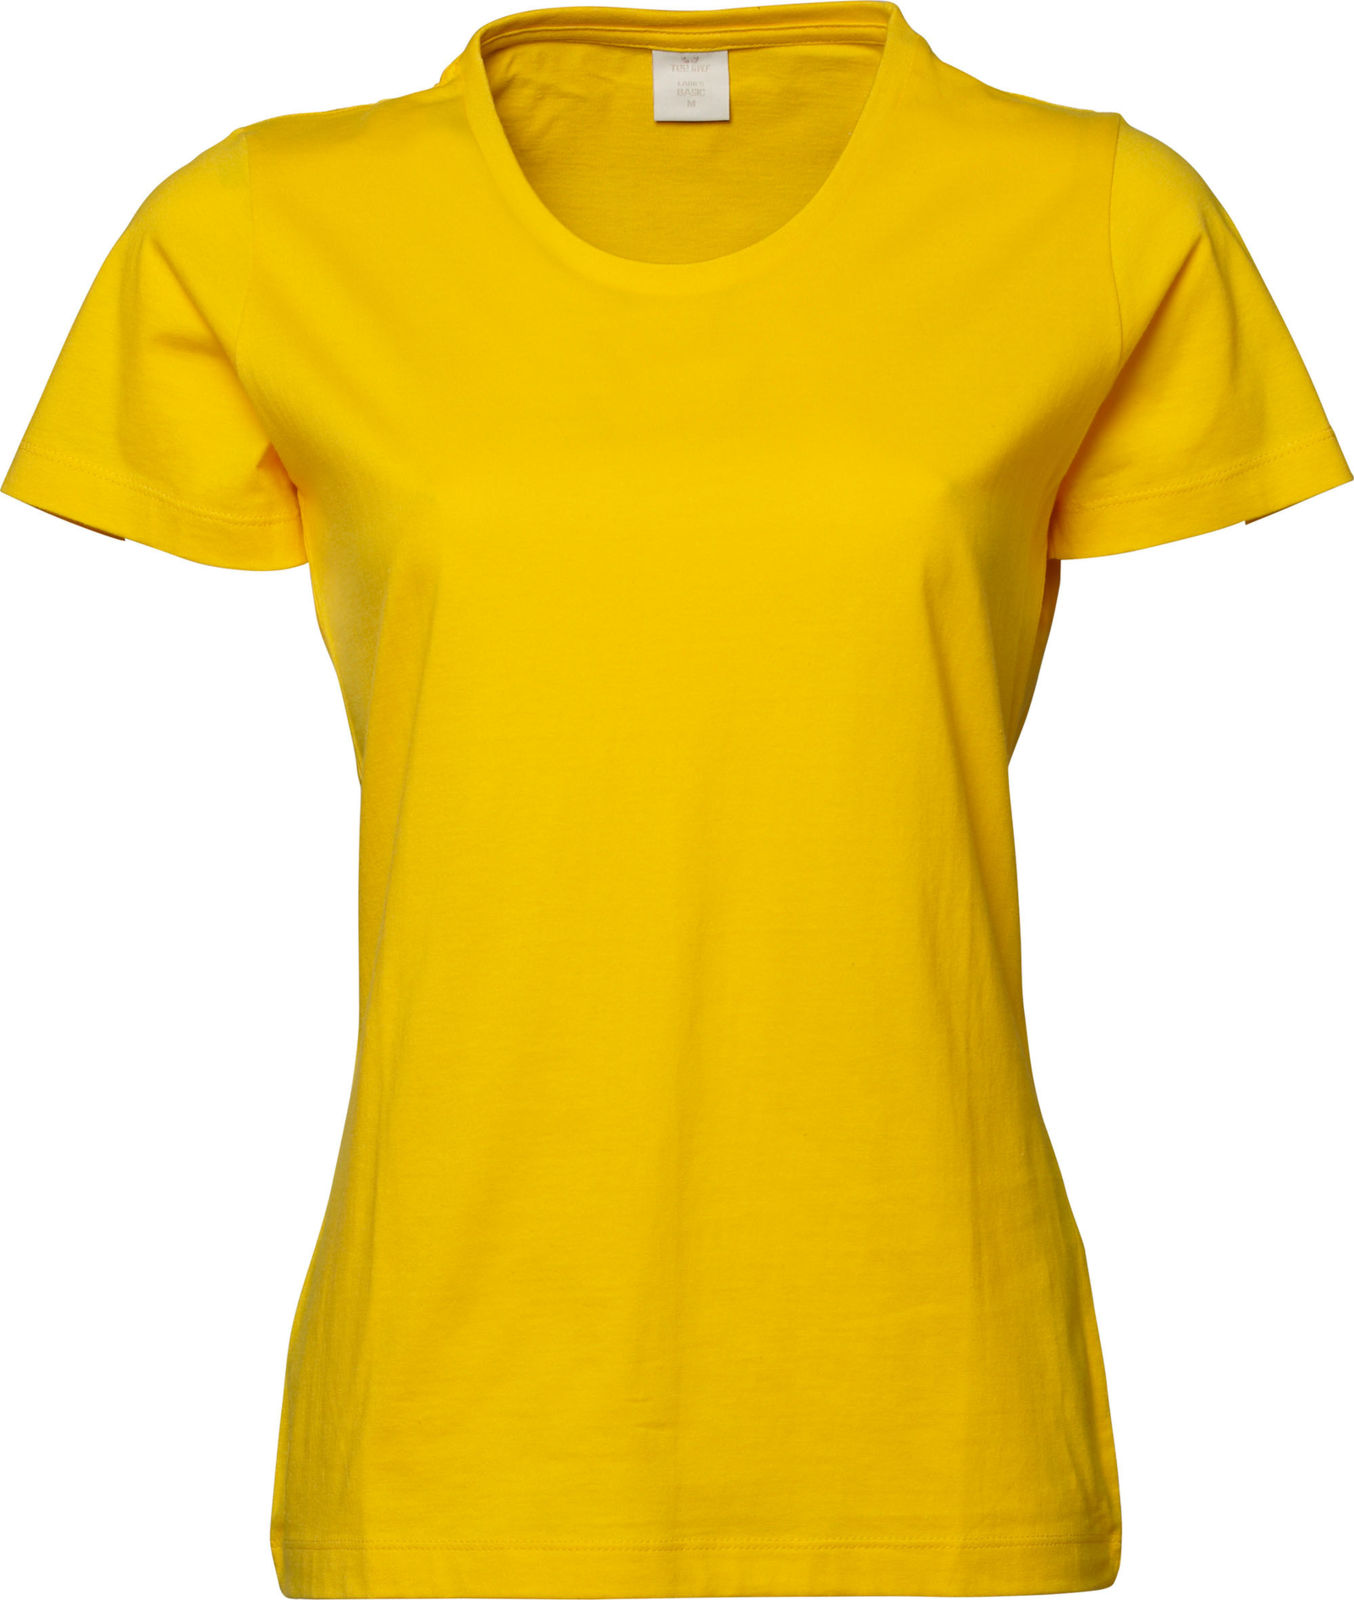 Ladies Basic, T Shirt Publicitaire Pour Femme, T-shirts publicitaires  pour Entreprises et Associations